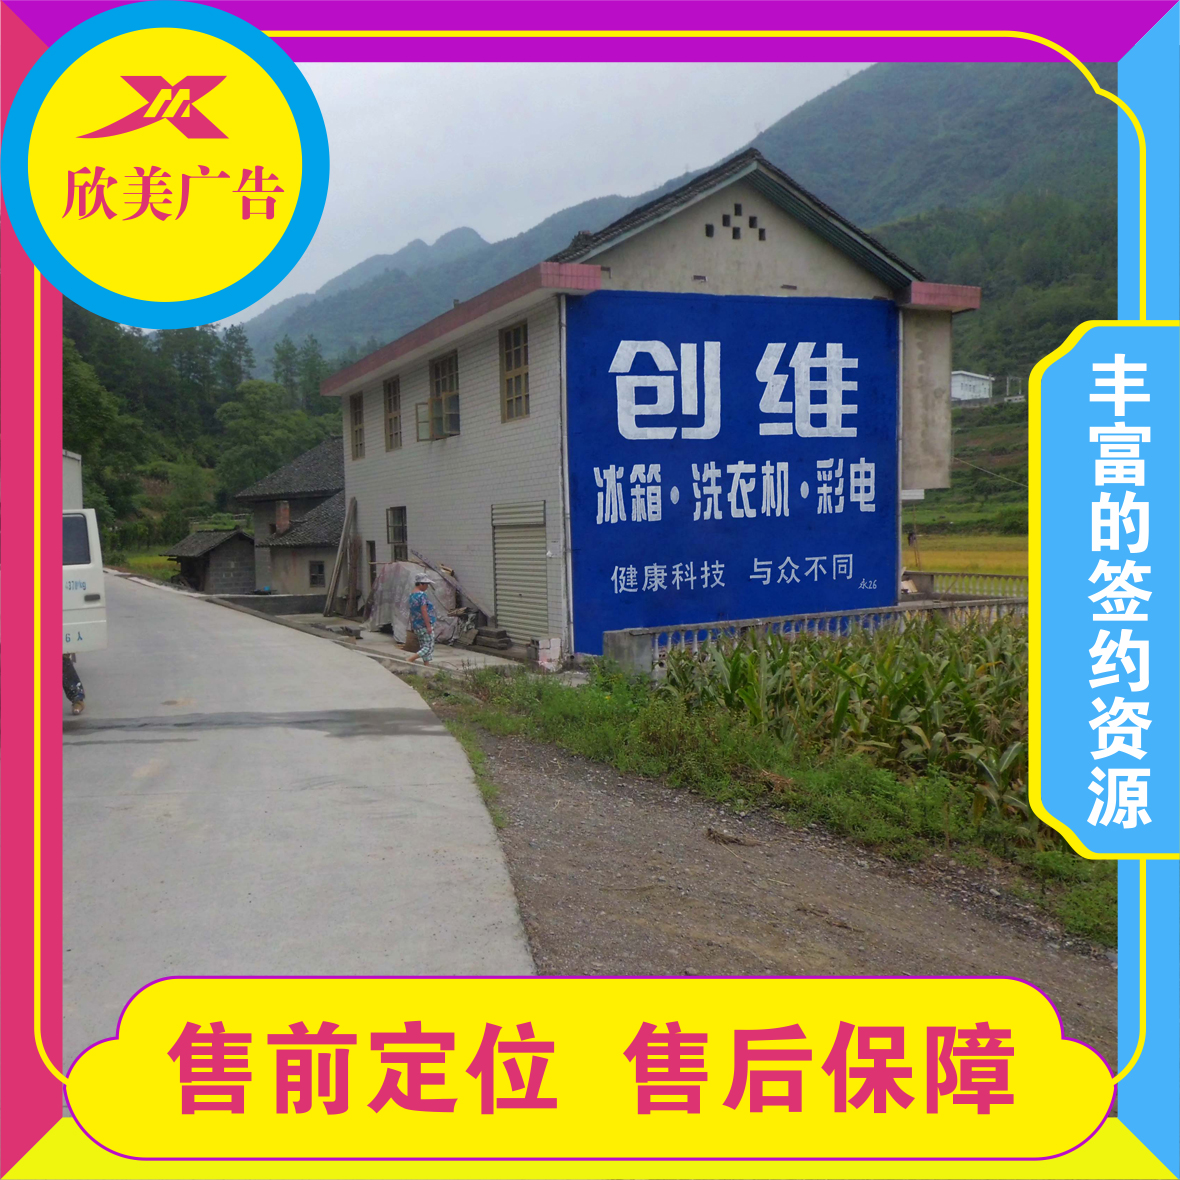 宜昌长阳乡村墙体广告发布荆州乡镇刷墙挂布广告农村刷墙广告很接地气的广告形式